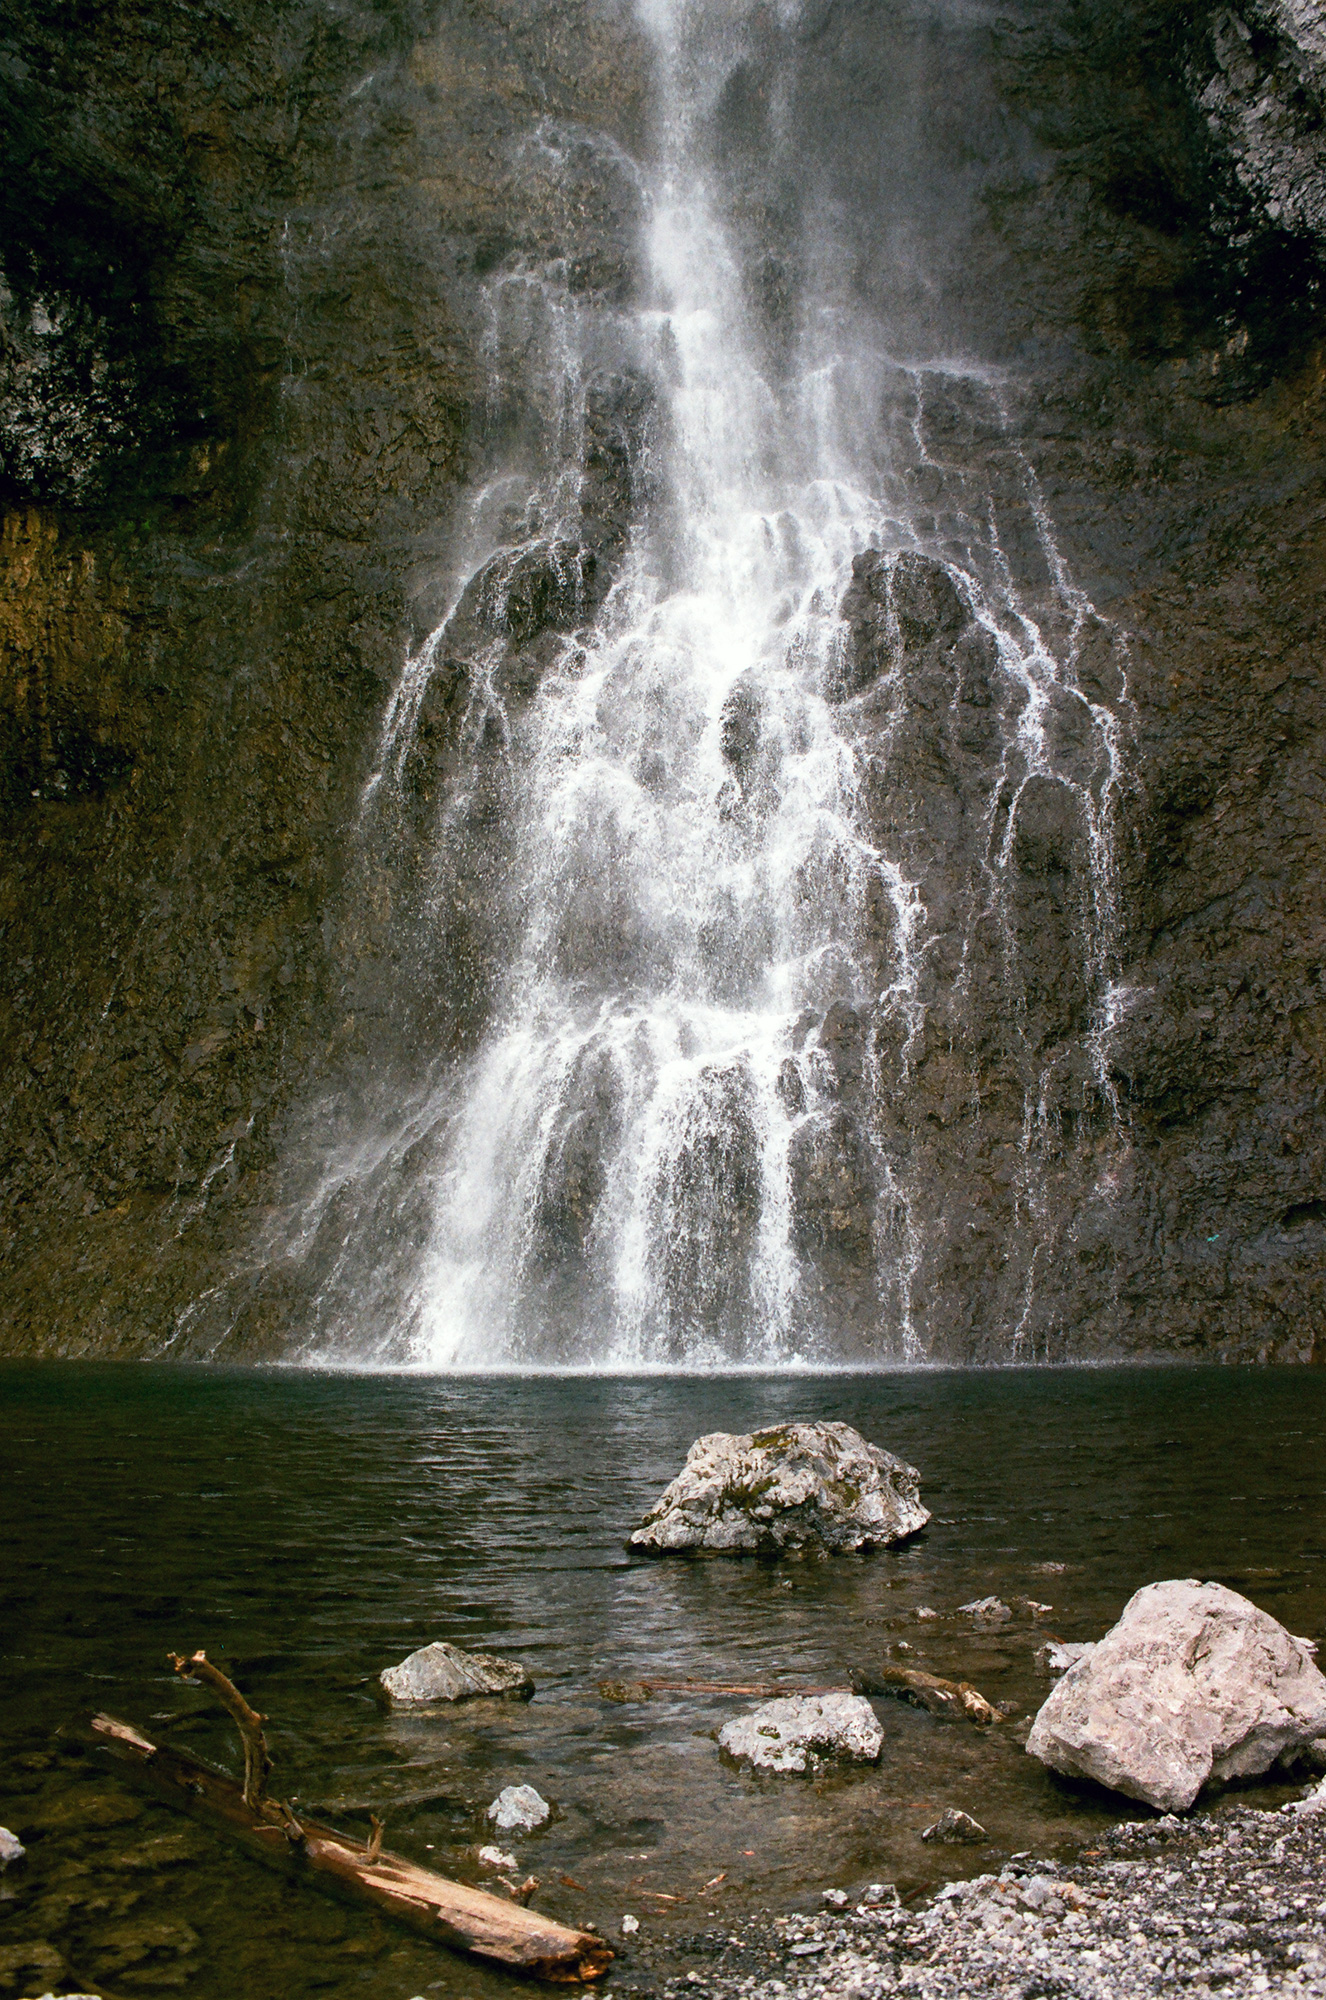 A shower of water gracefully drifts down a rock face to meet a small reservoir.